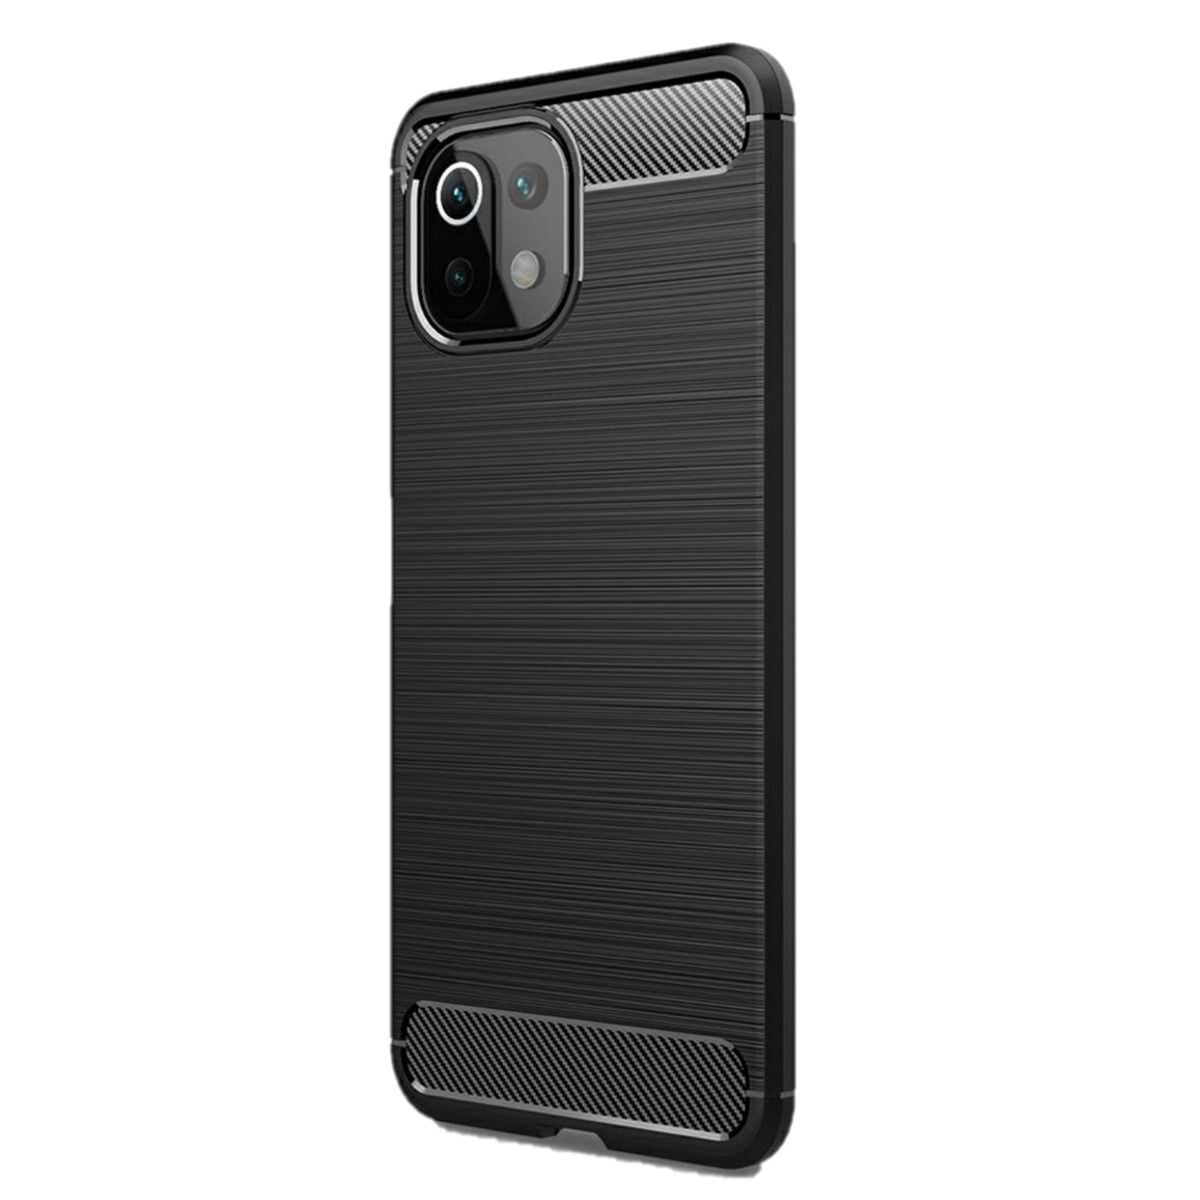 COVERKINGZ Handycase im Carbon Look, Mi NE schwarz Backcover, 11 5G, 11 Xiaomi, Lite / 5G Lite